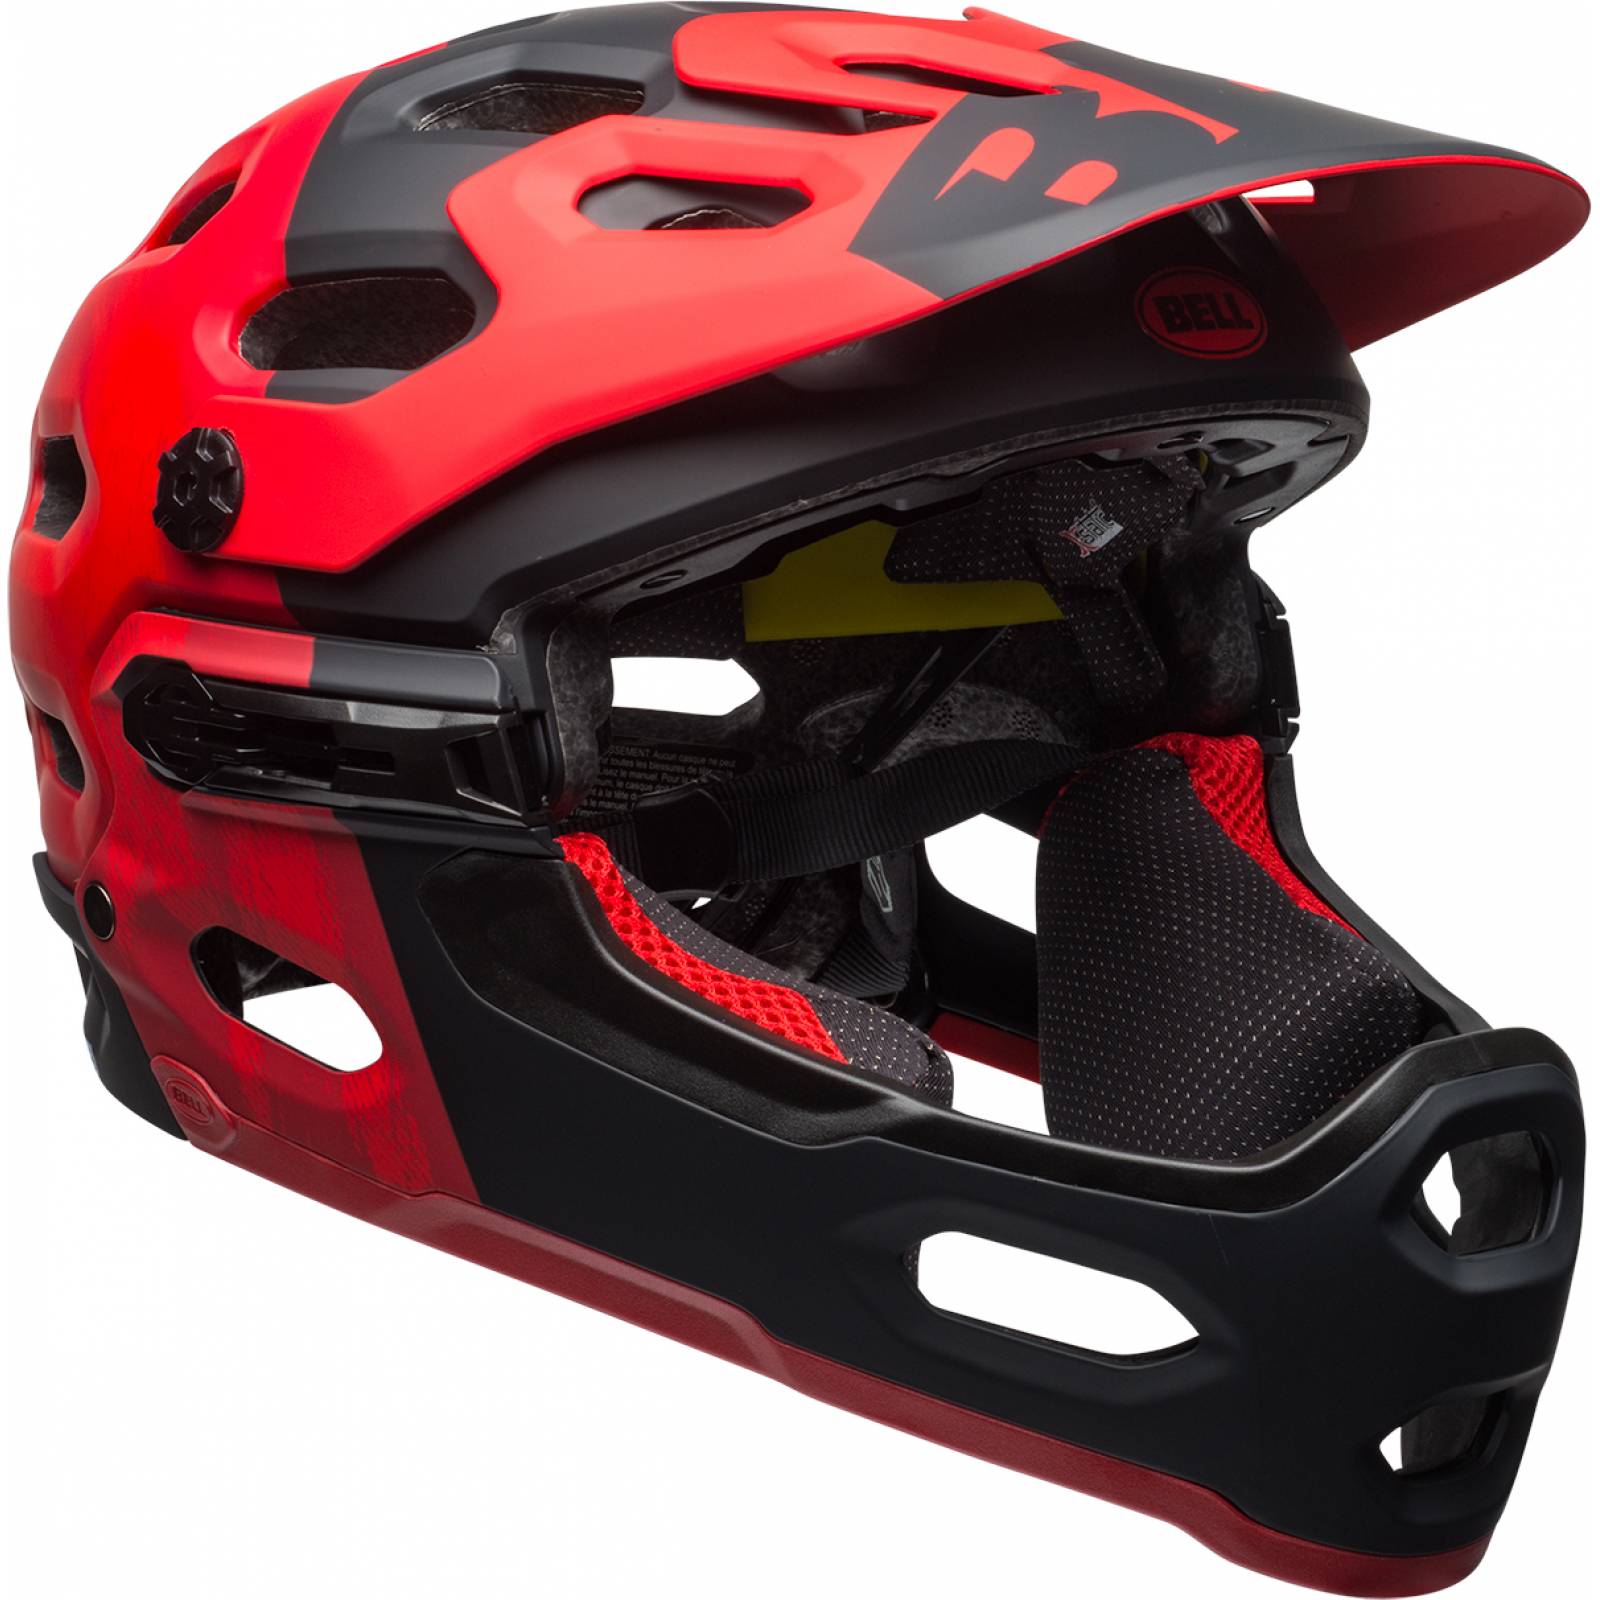 Casco para bicicleta BELL Montaña SUPER 3R MIPS Rojo/Negro Negro Talla:S(52-56cm) con Mandibula Romovible